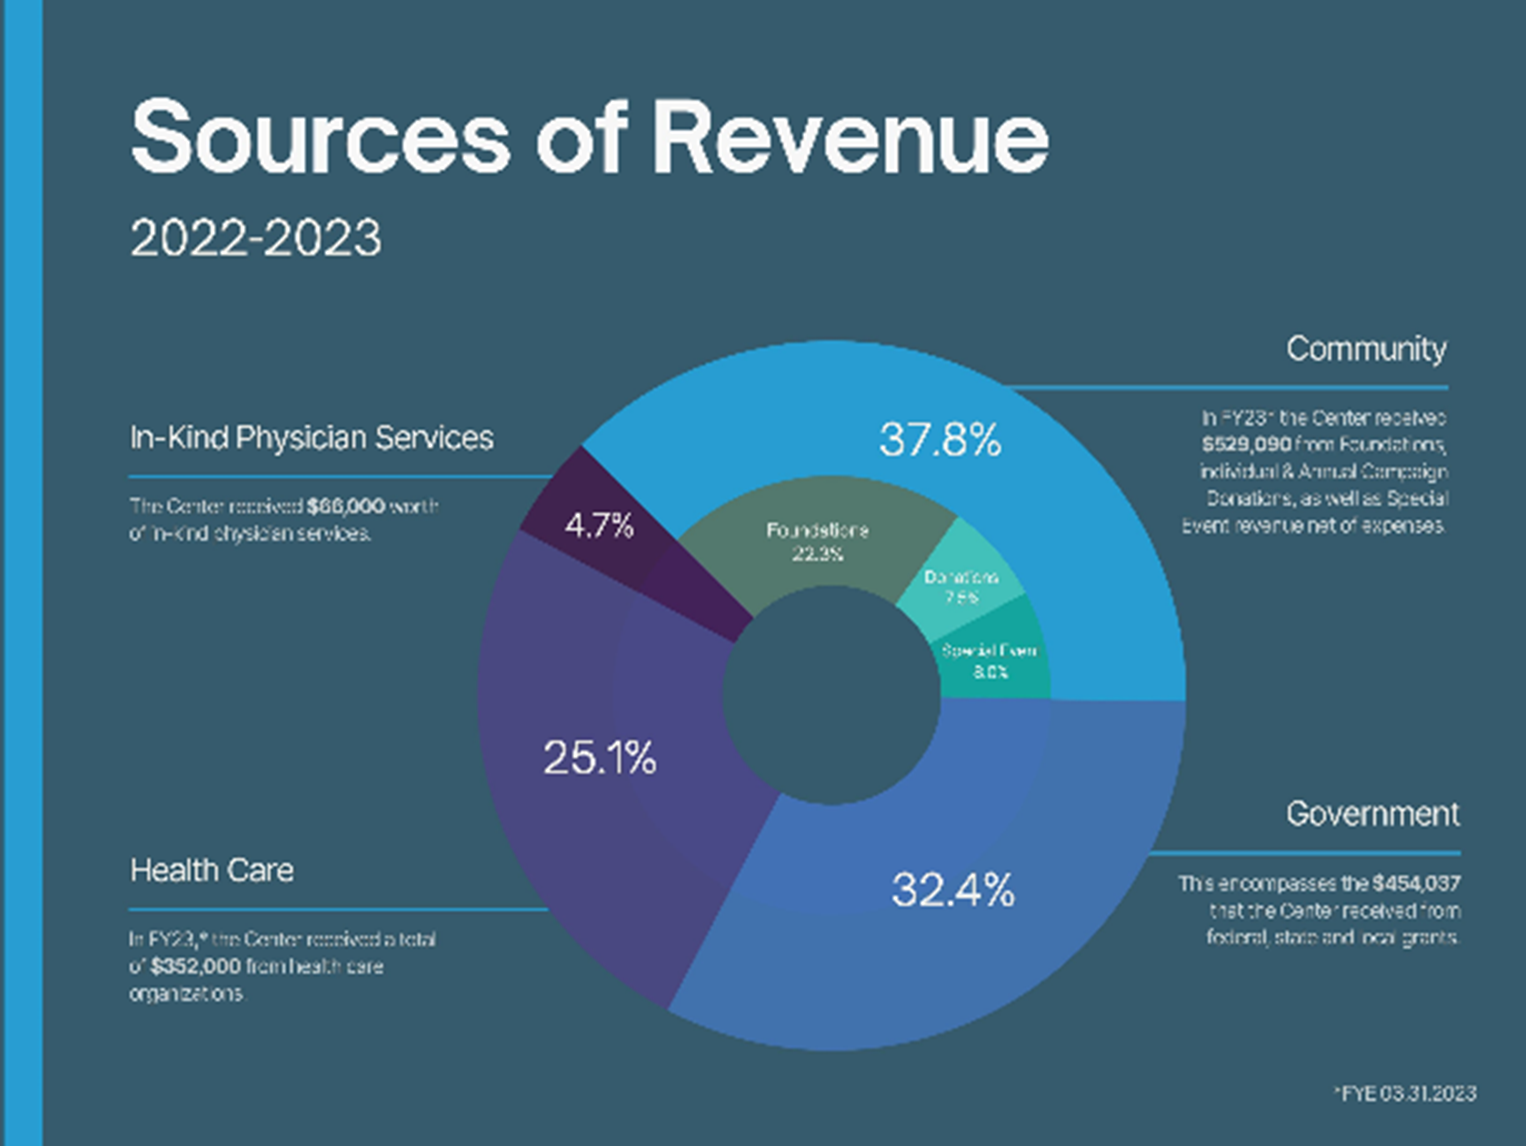 Sources of Revenue 2022-2023